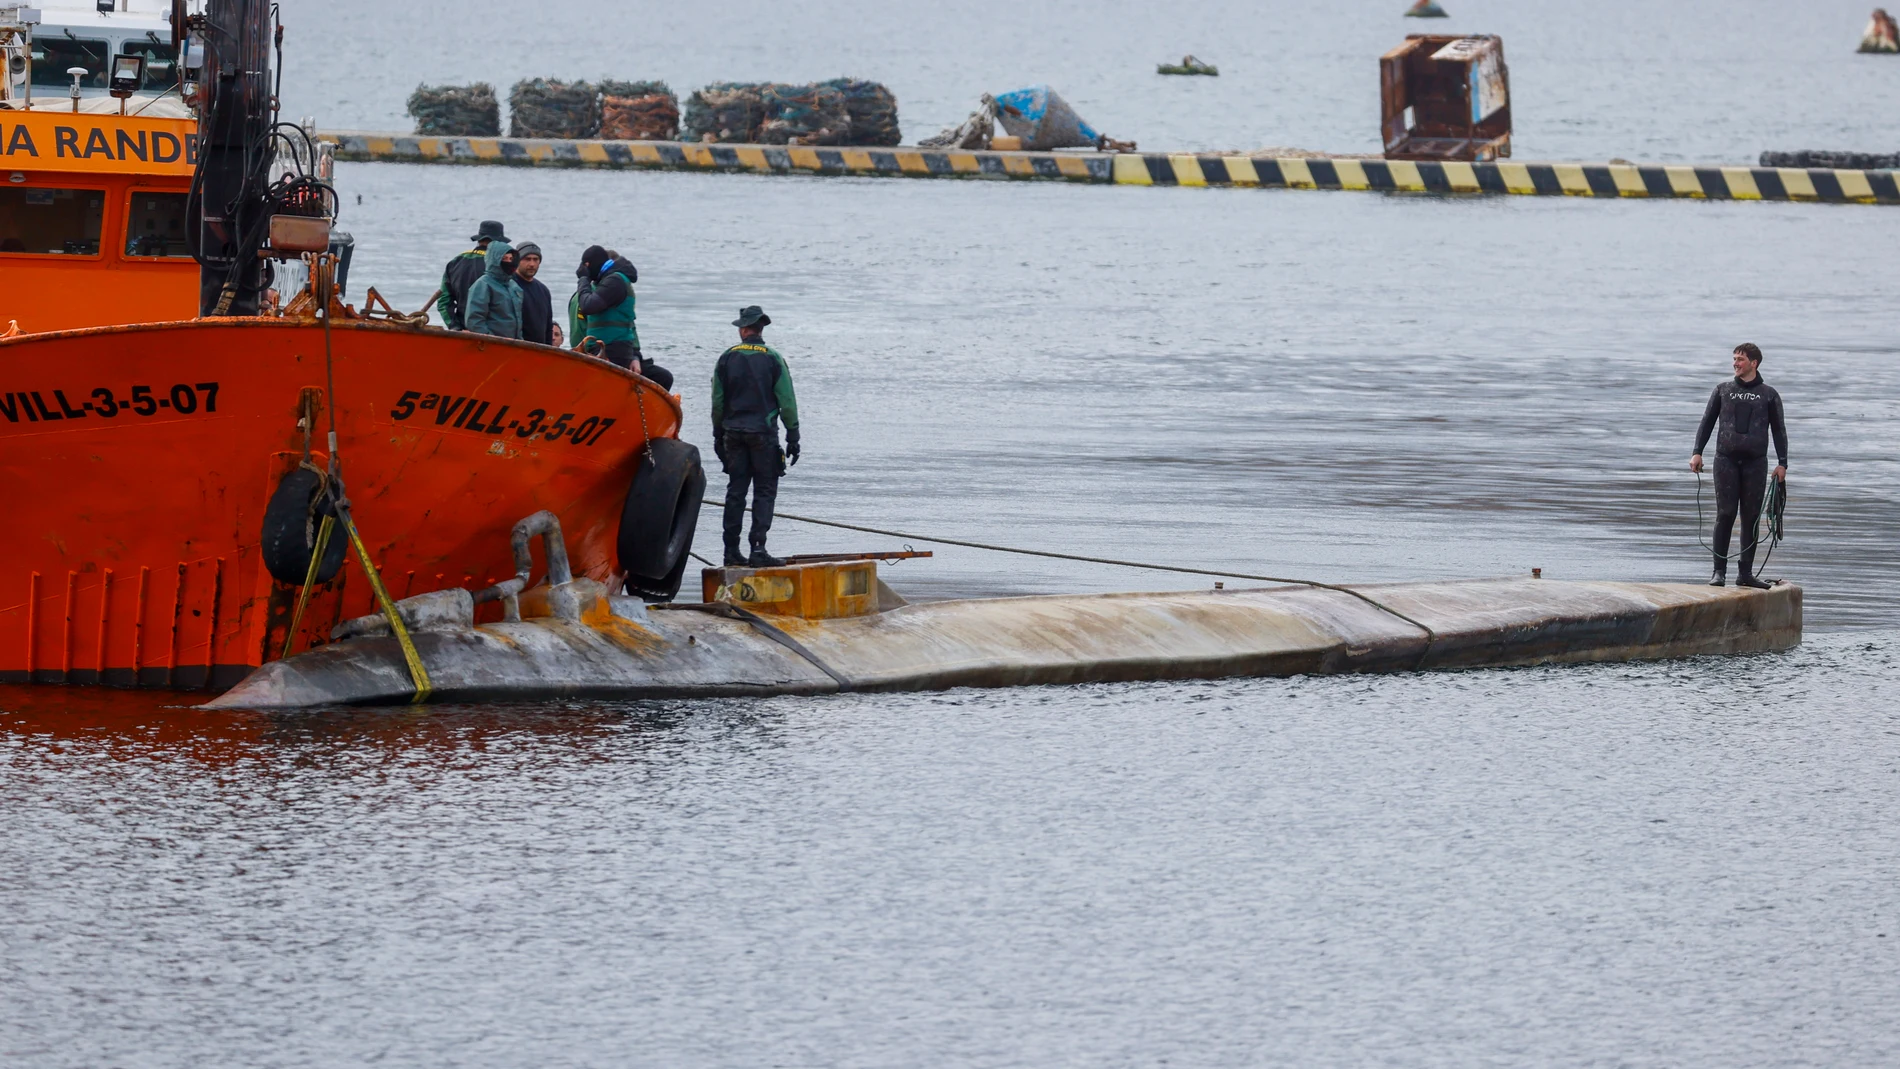 El narcosubmarino reflotado es trasladado a puerto este martes tras ser localizado ayer en a Ría de Arousa